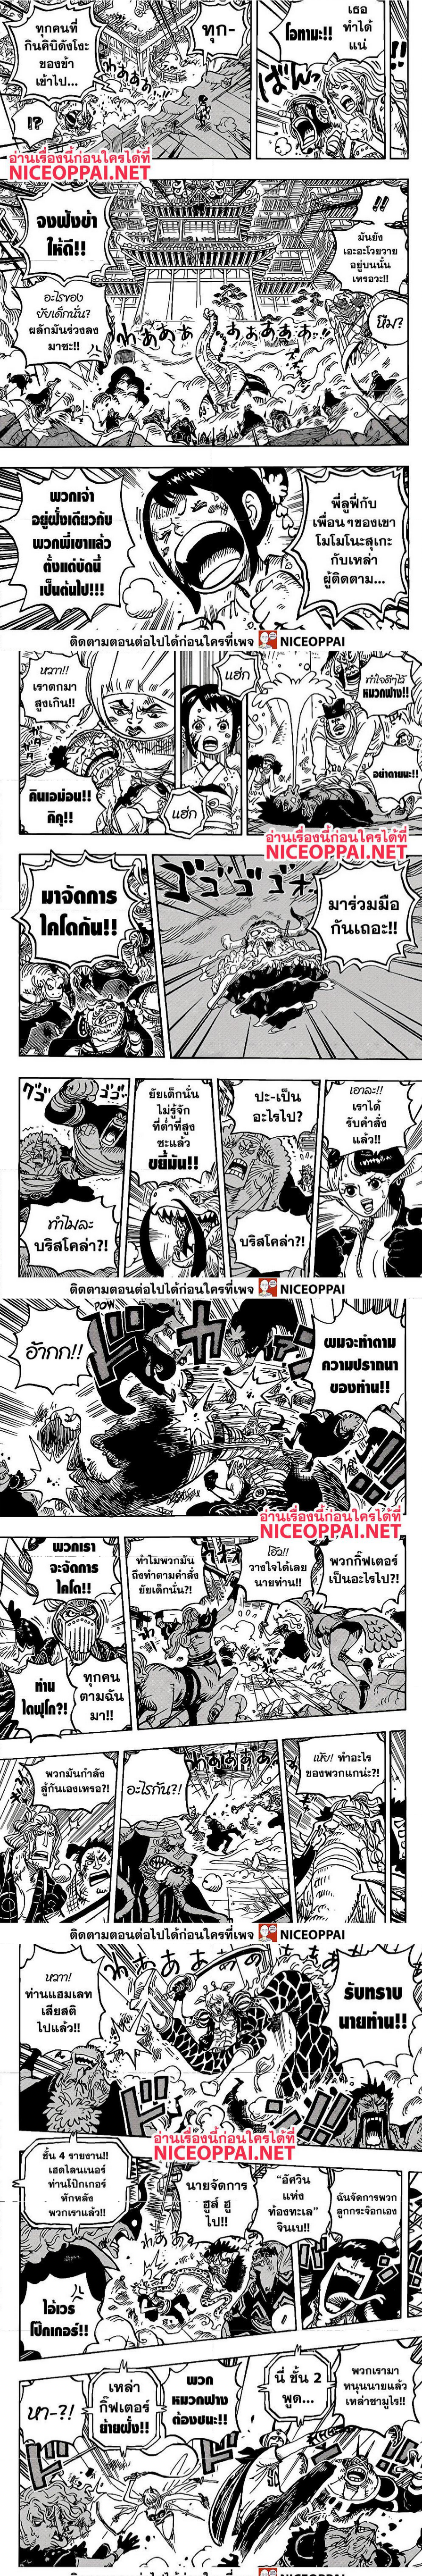 One Piece1017 2